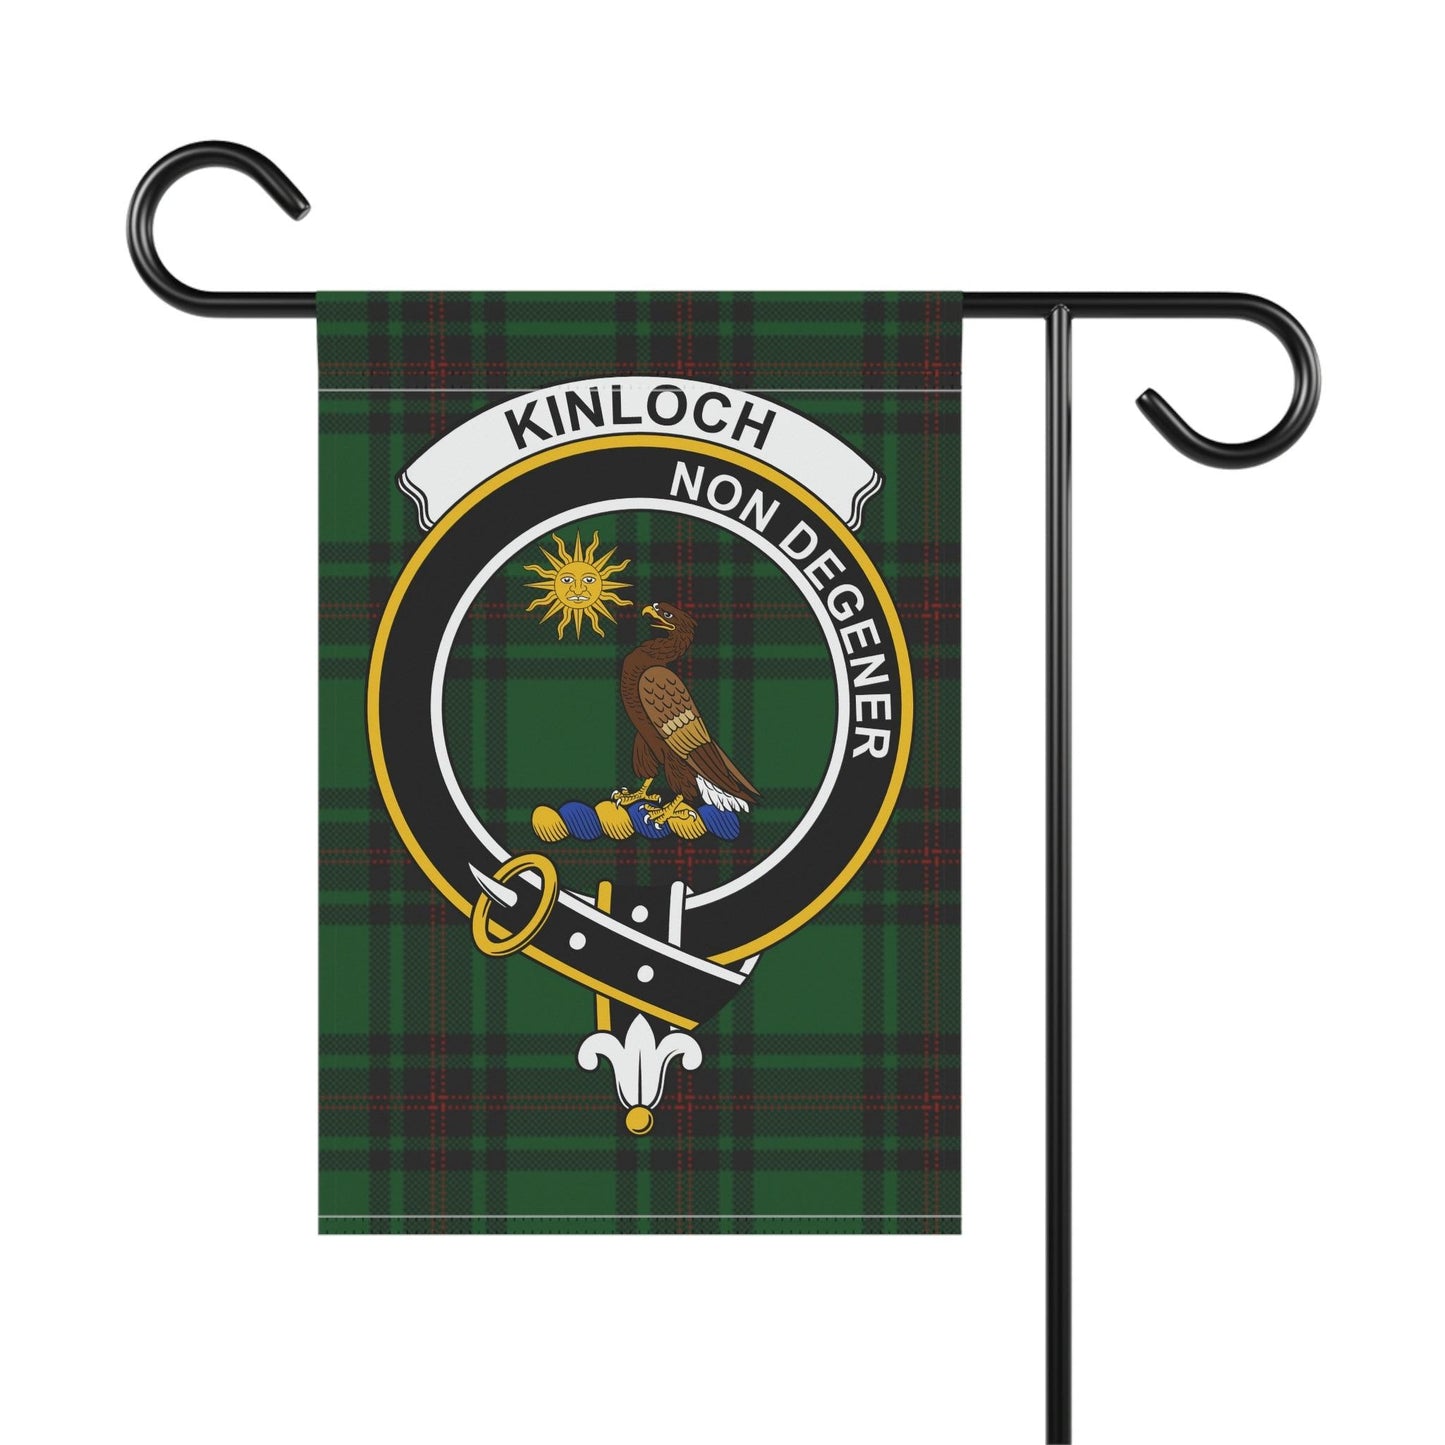 Kinloch Clan Scottish Tartan Garden Banner, Kinloch Family Crest Scotland Flag